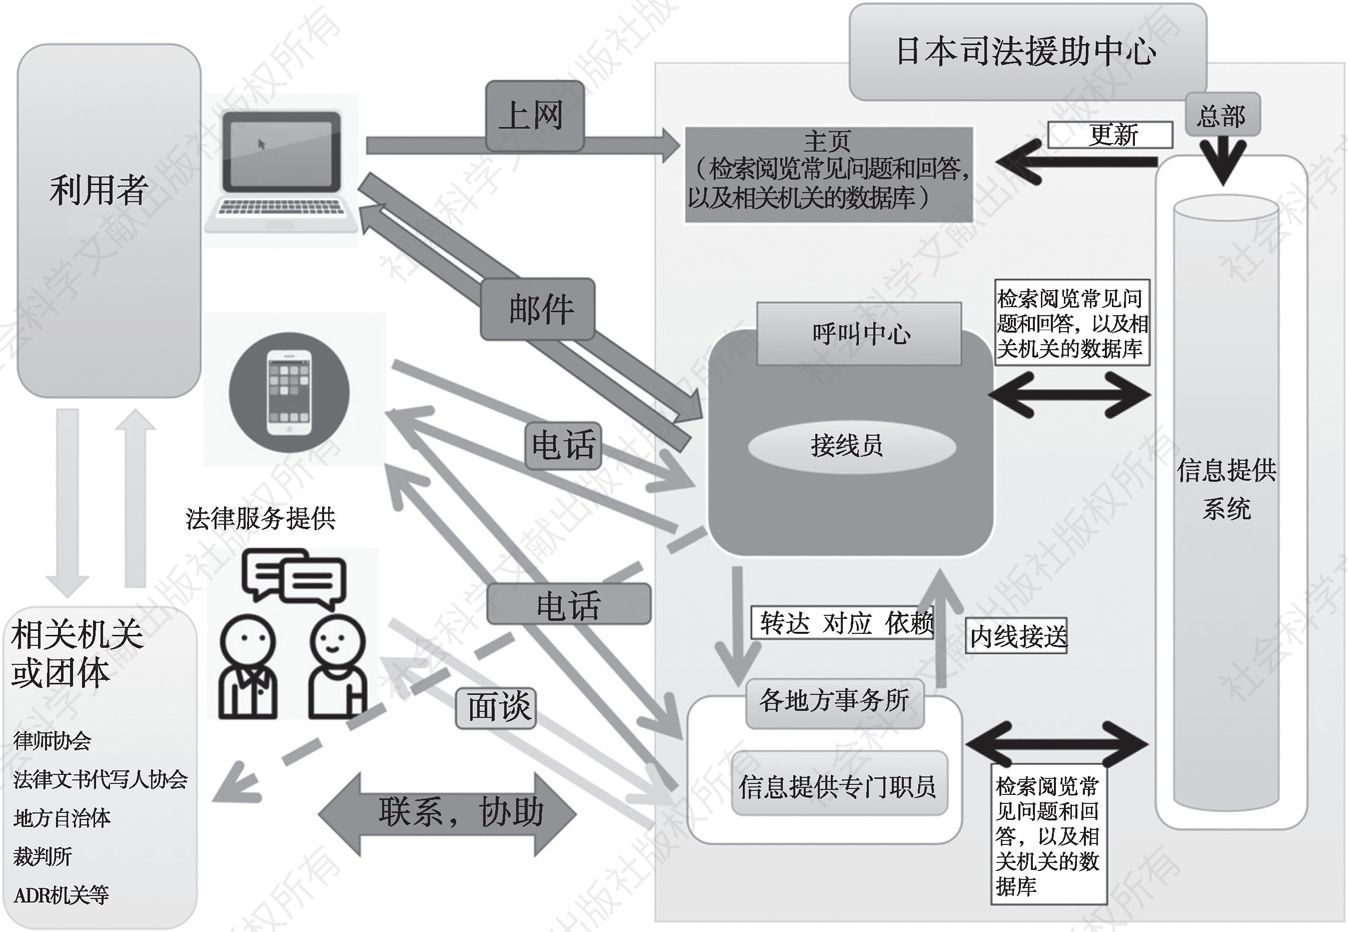 图7 信息提供服务流程